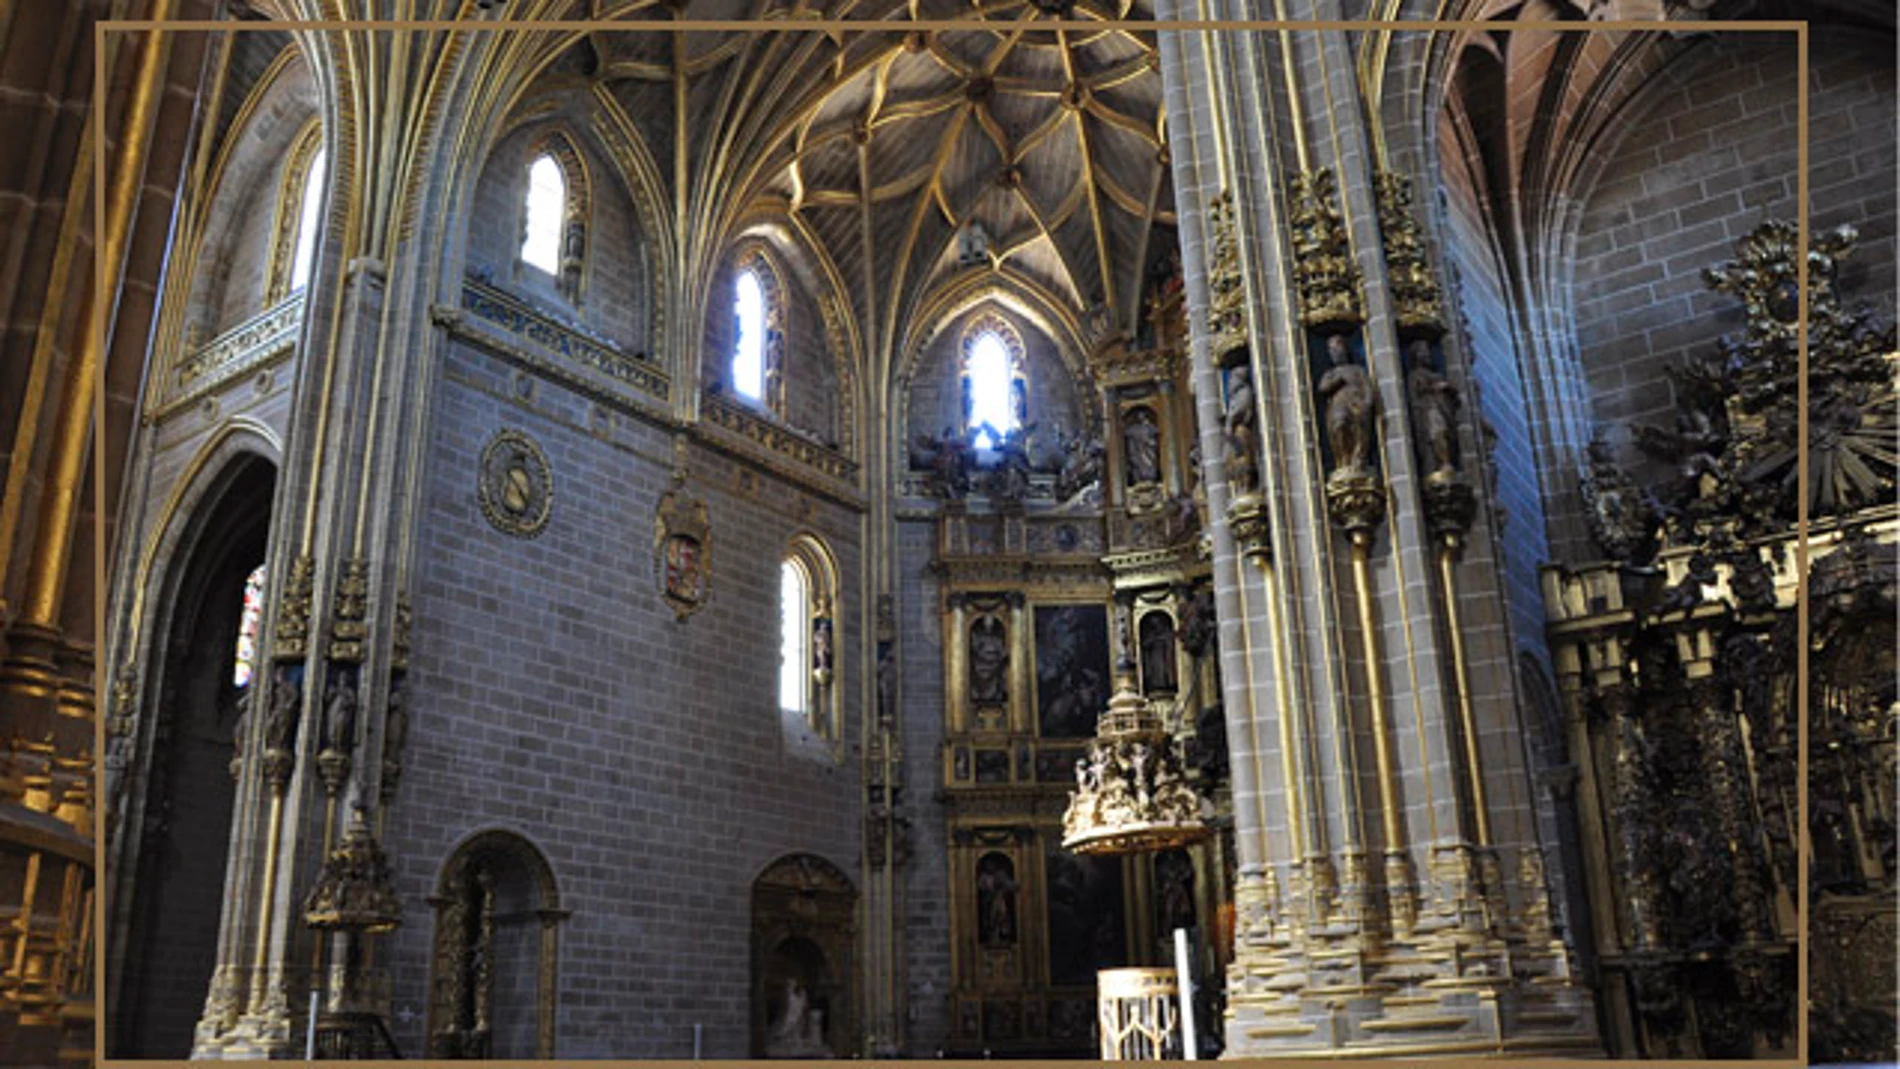 Interior de la catedral de Plasencia